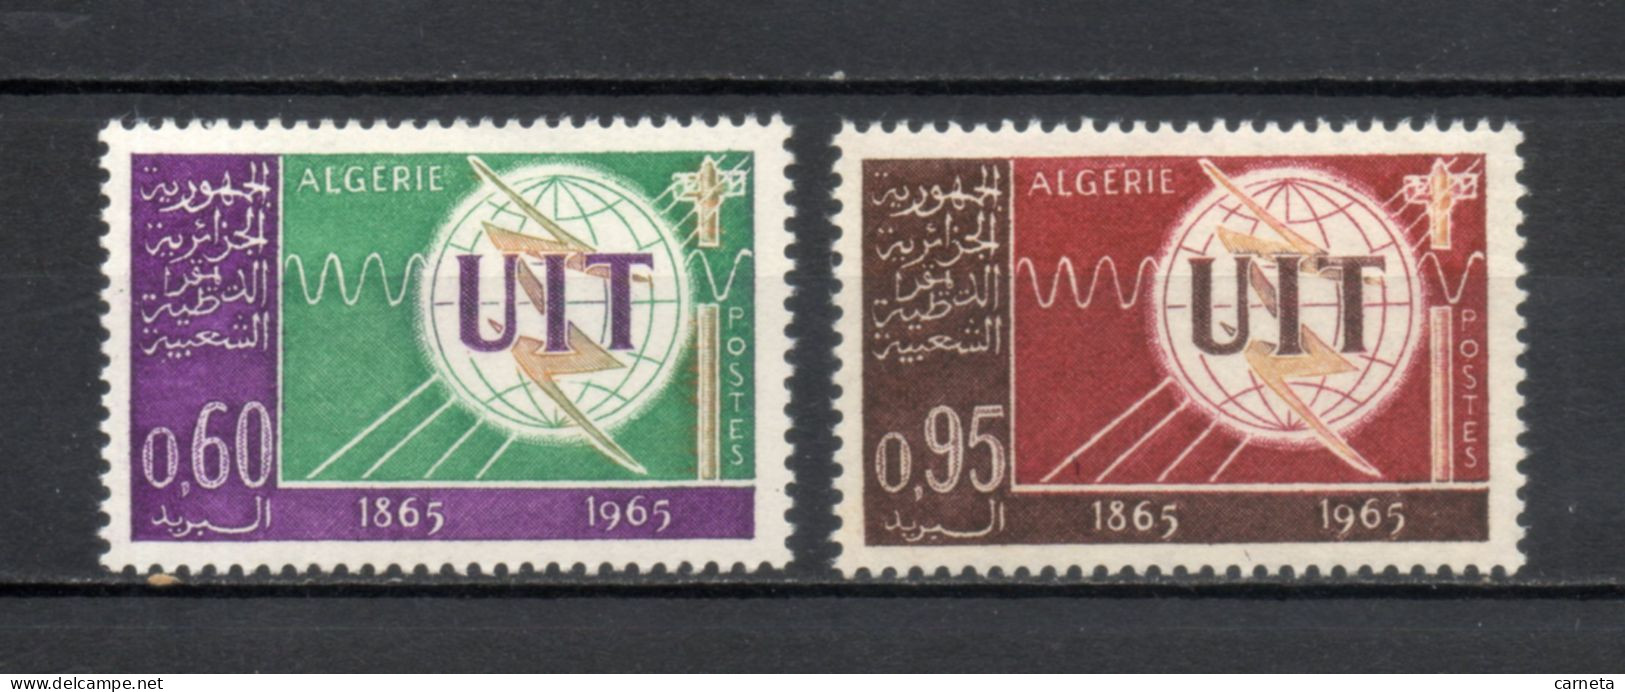 ALGERIE N° 409 + 410   NEUFS SANS CHARNIERE COTE 3.00€    TELECOMMUNICATIONS UIT - Algeria (1962-...)